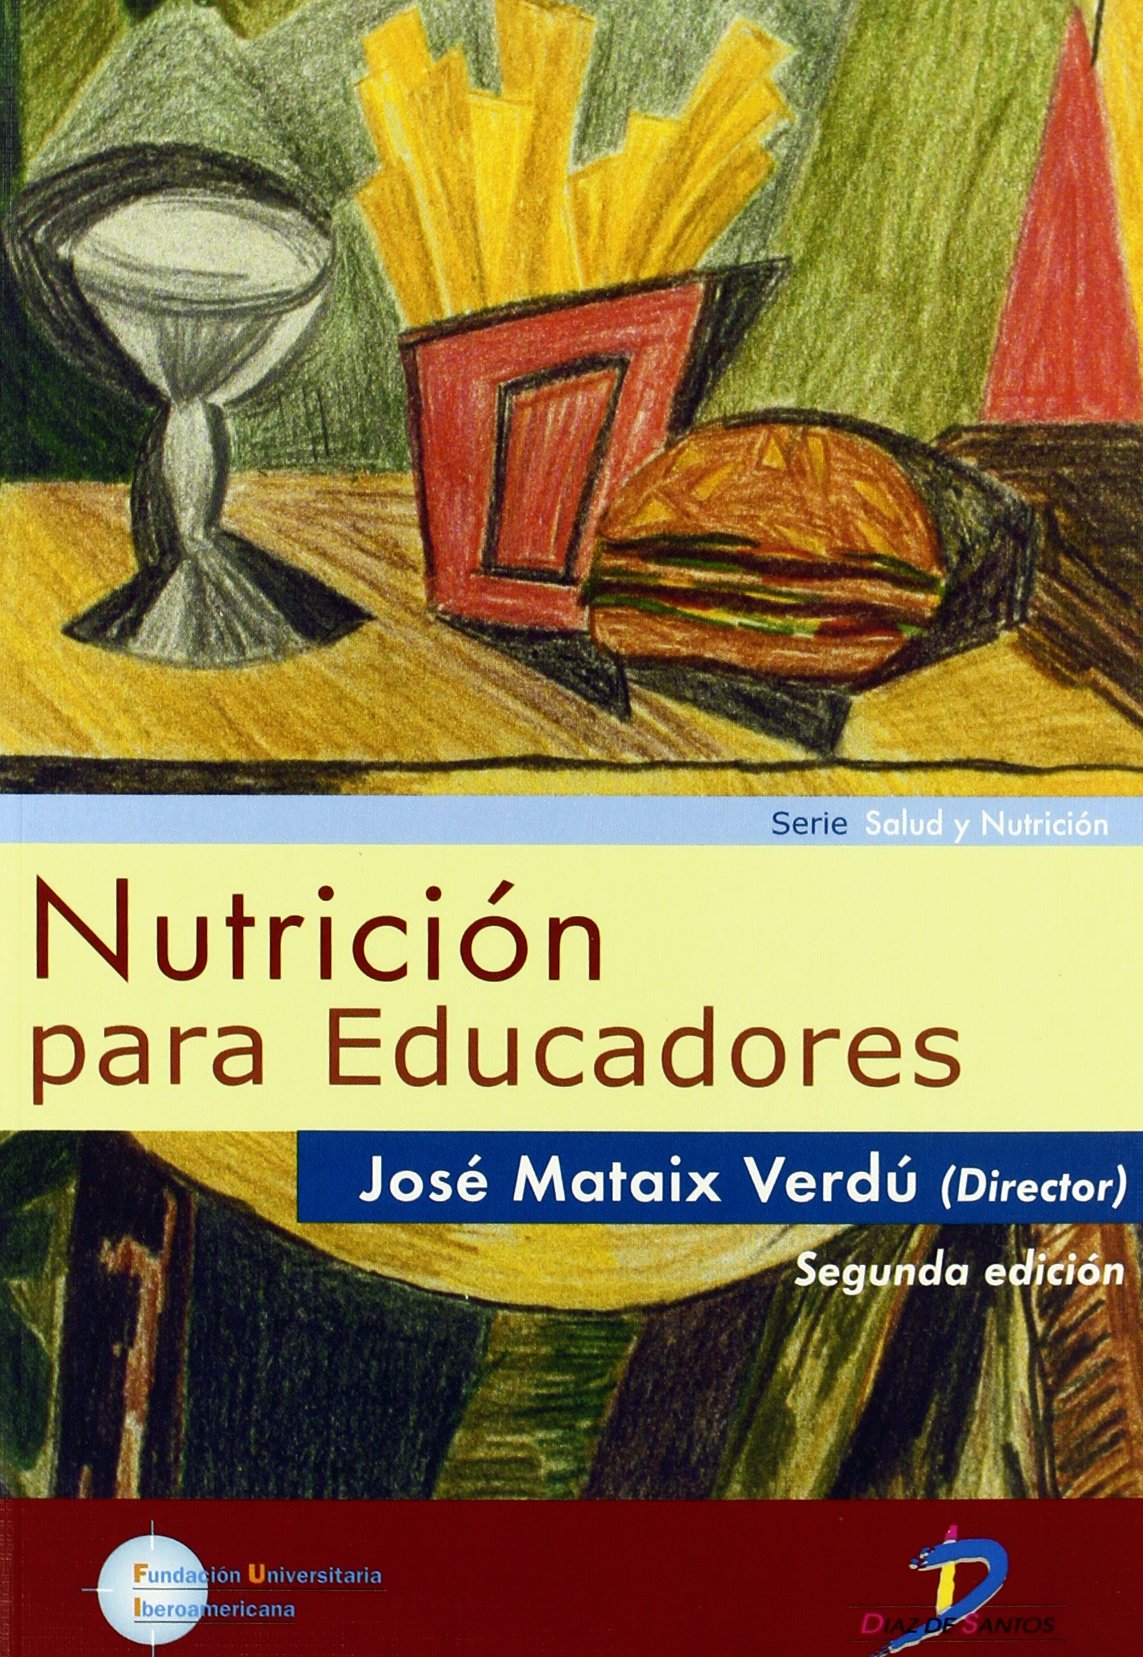 /media/imagenes/Nutricion_para_educadores.jpg